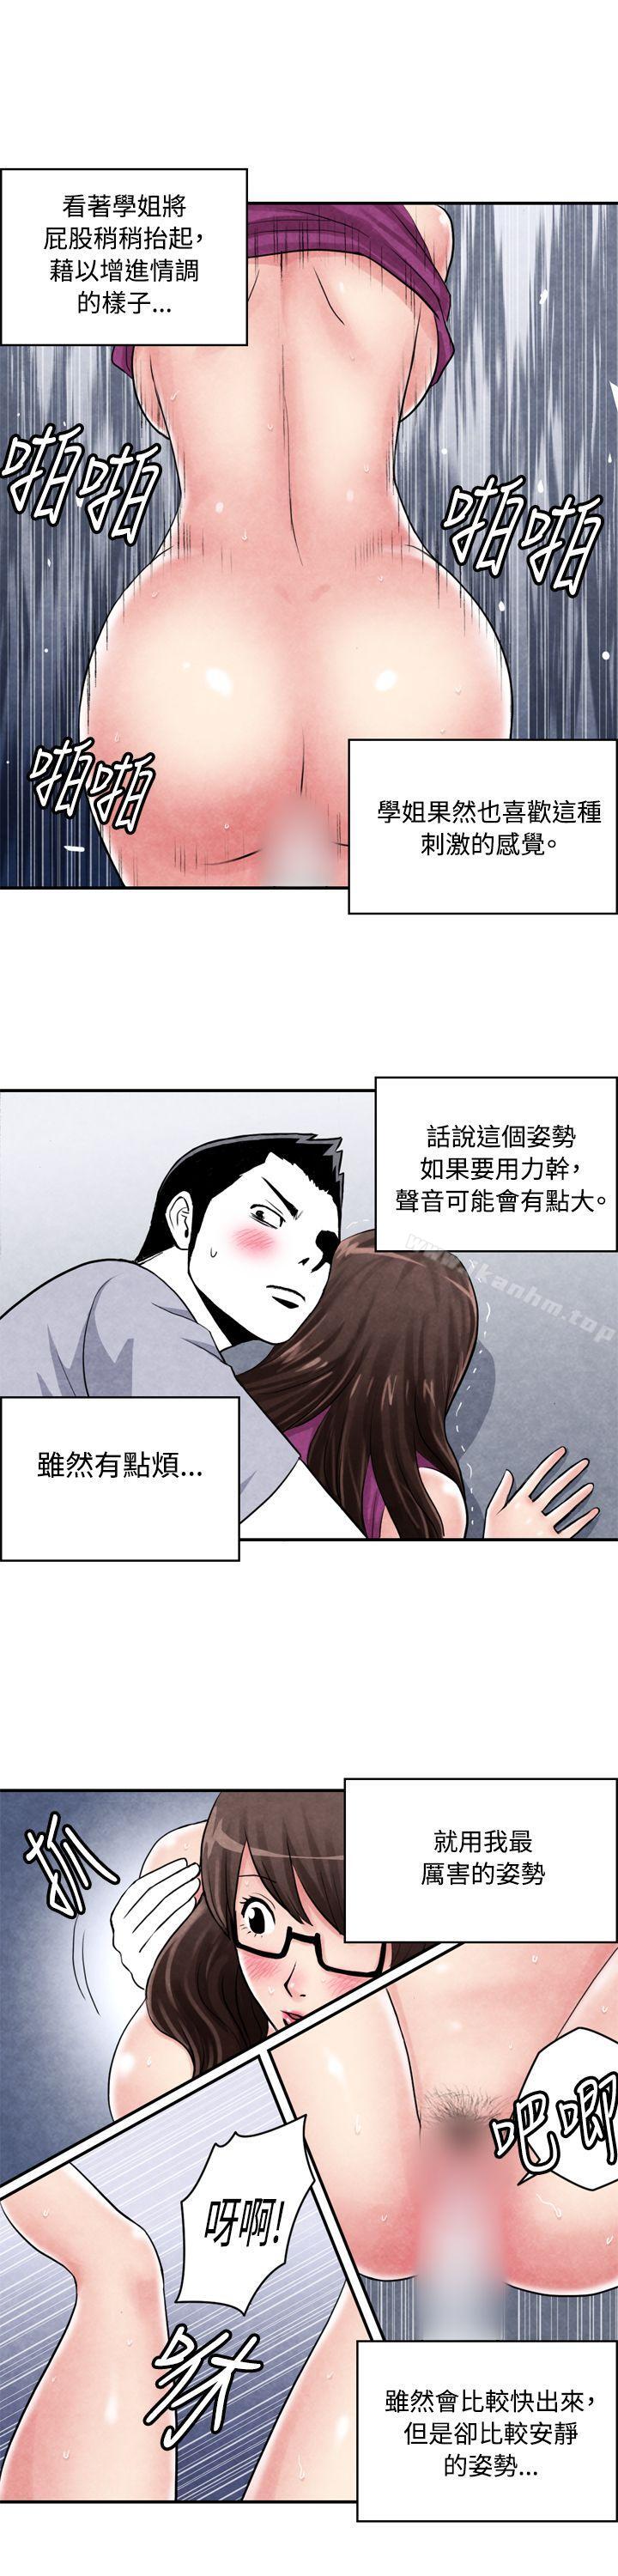 漫画韩国 生物學的女性攻略法   - 立即阅读 生物學的女性攻略法 CASE 02-2. 在陌生地方的悸動第7漫画图片